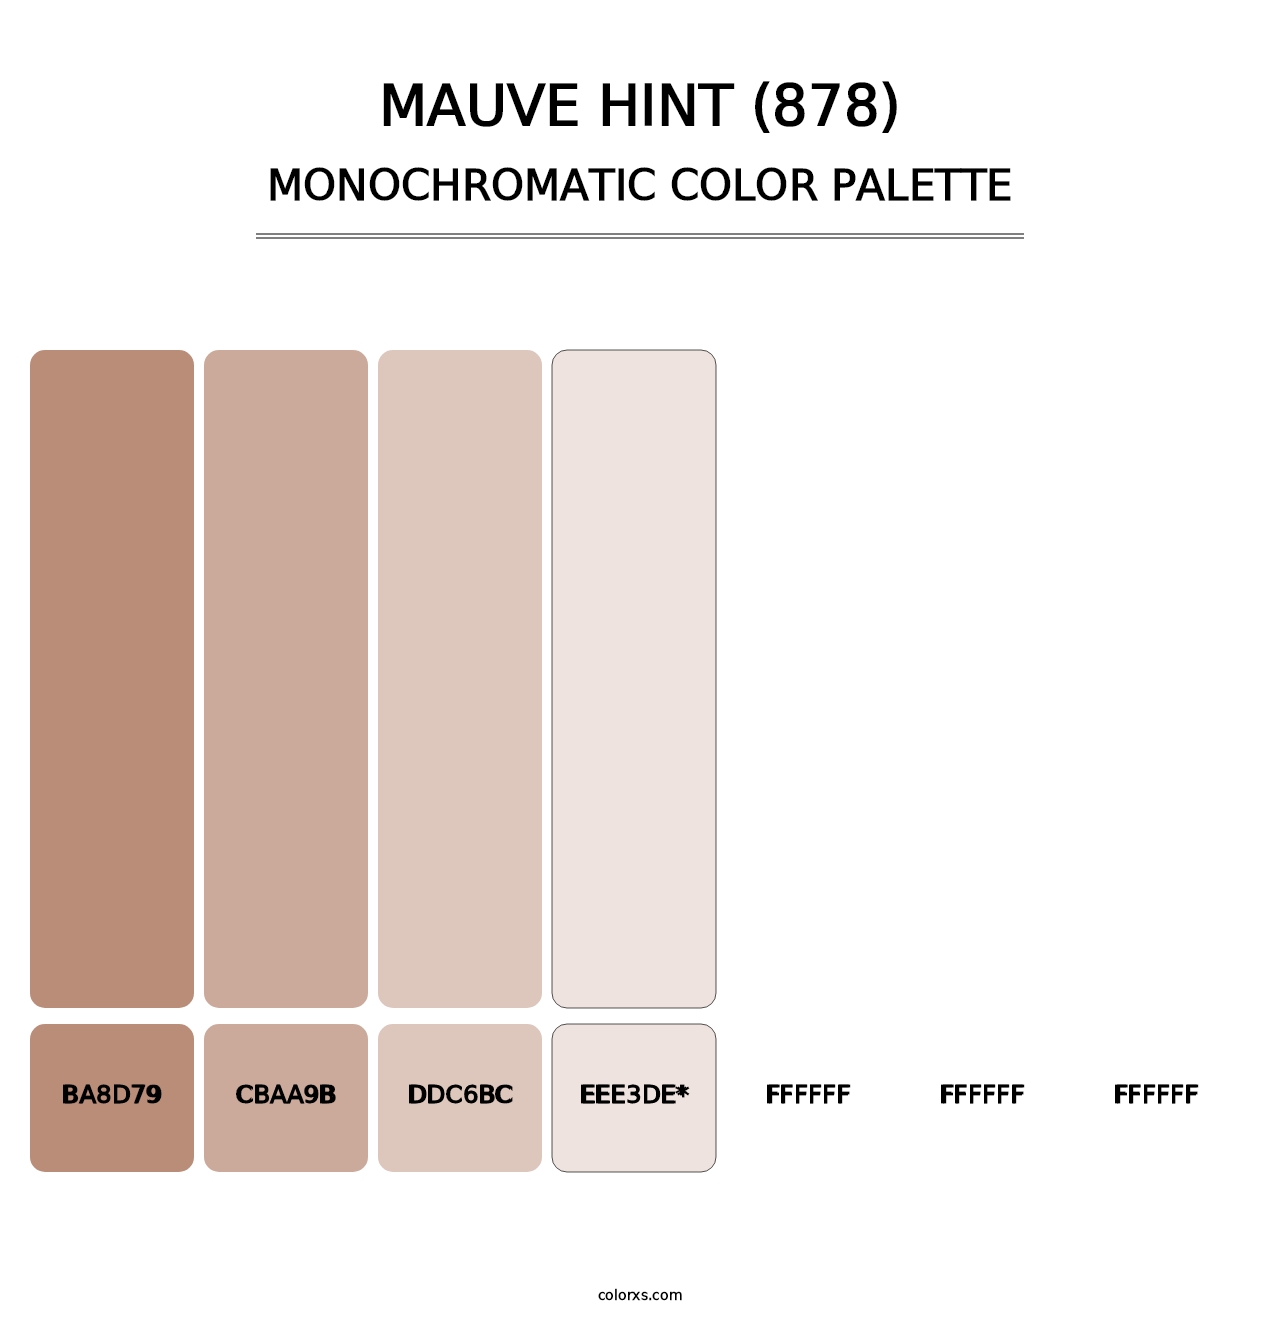 Mauve Hint (878) - Monochromatic Color Palette